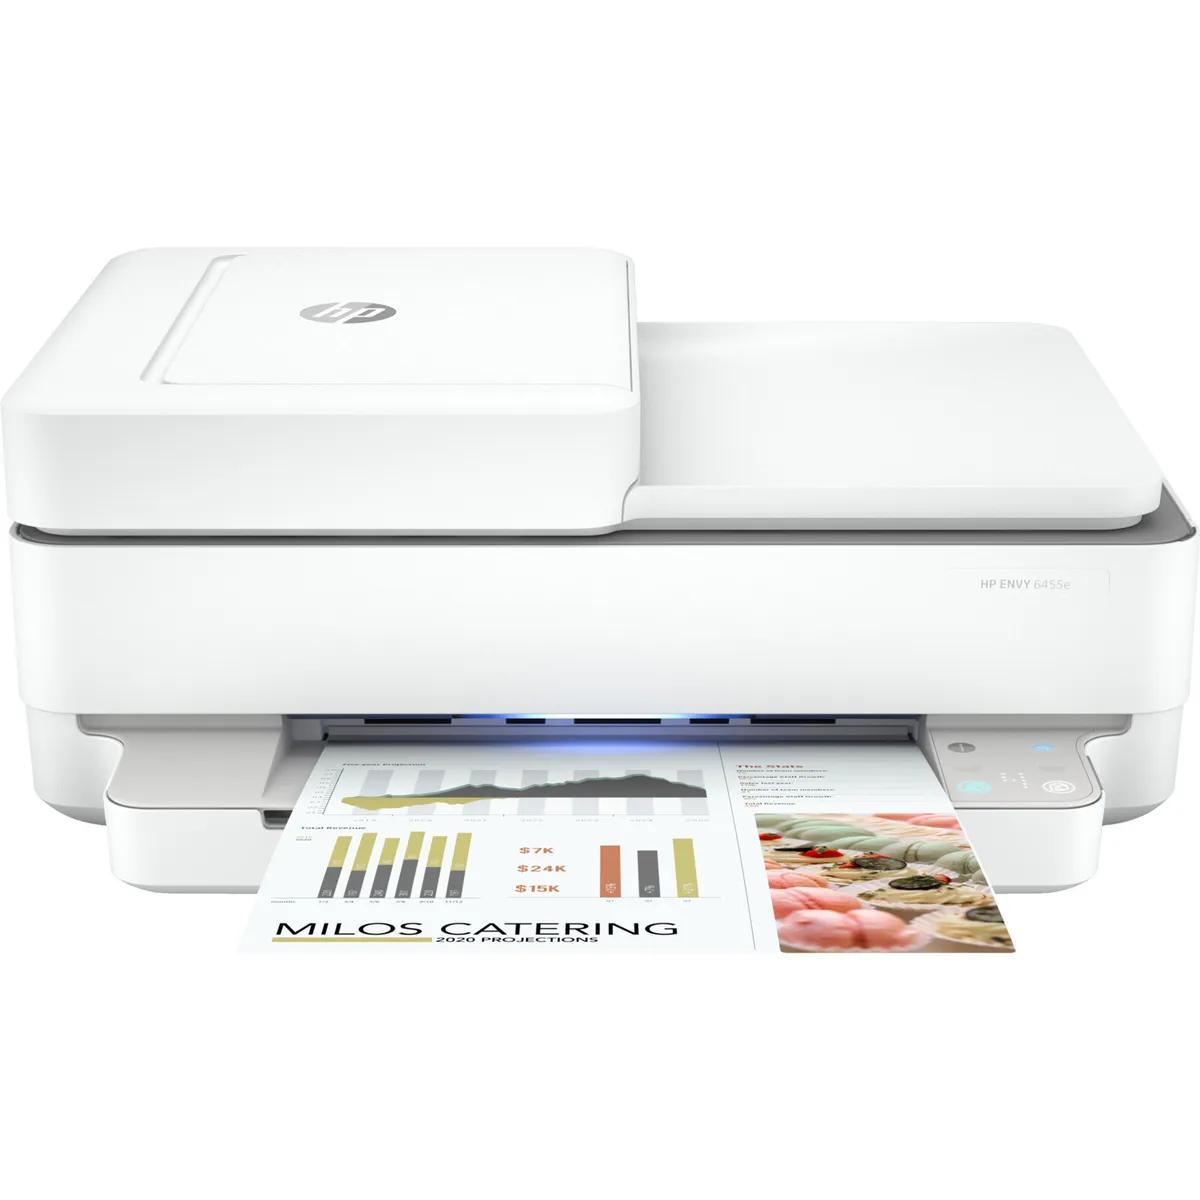 hewlett packard printer help - Do HP printers have a reset button